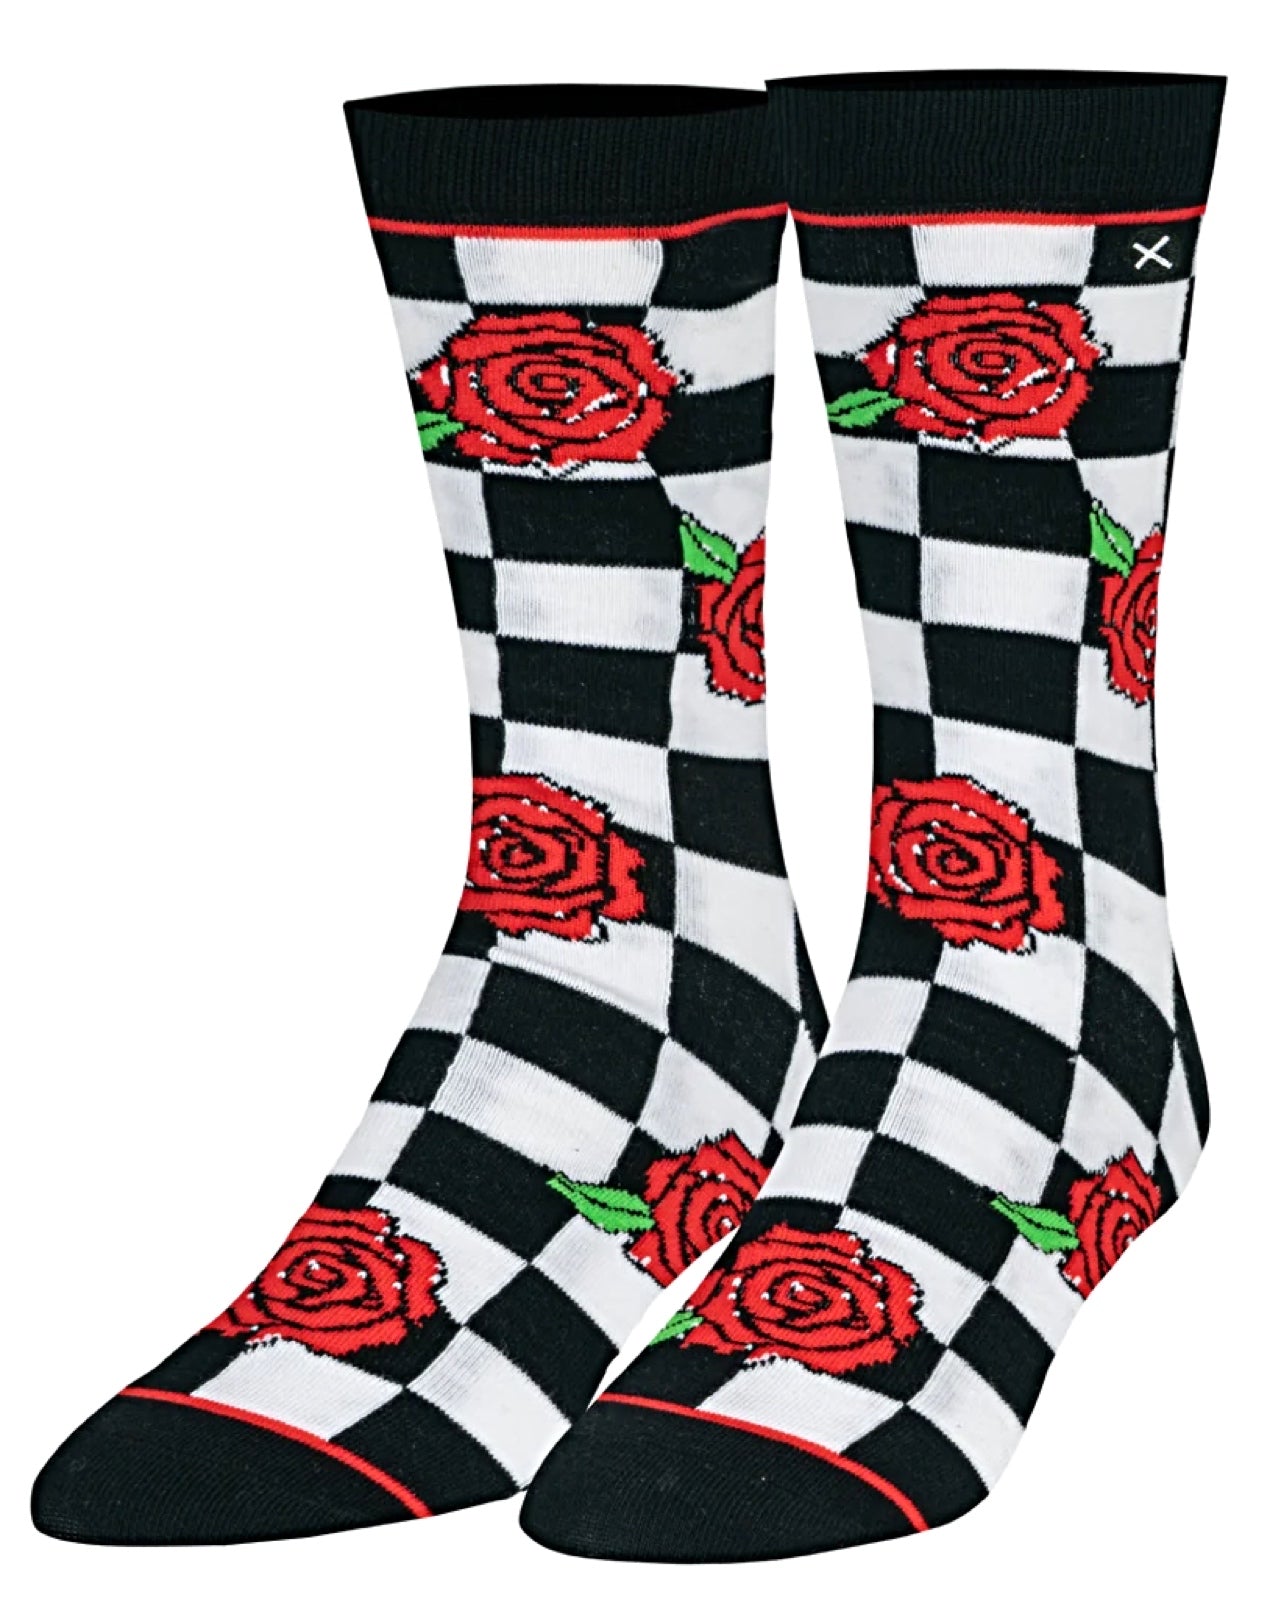 ODD SOX Brand Men’s CHECKERBOARD & ROSES Socks